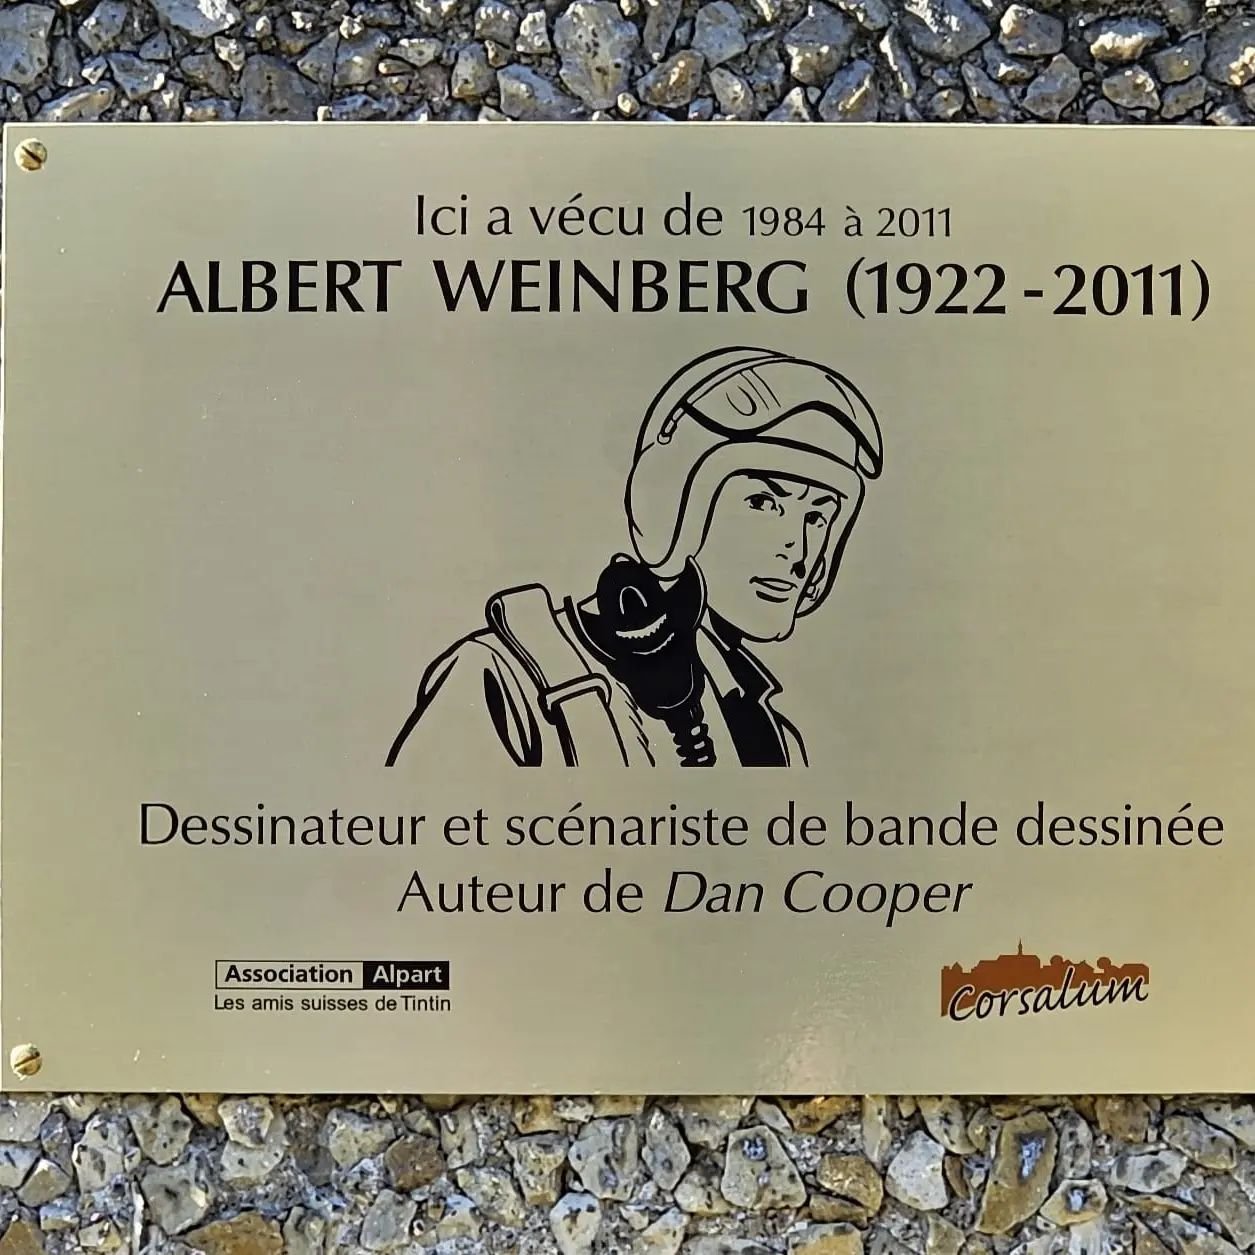 La plaque appos&eacute;e sur l'immeuble o&ugrave; Albert Weinberg a v&eacute;cu durant 25 ans, inaugur&eacute;e en pr&eacute;sence de personnes l'ayant bien connu.